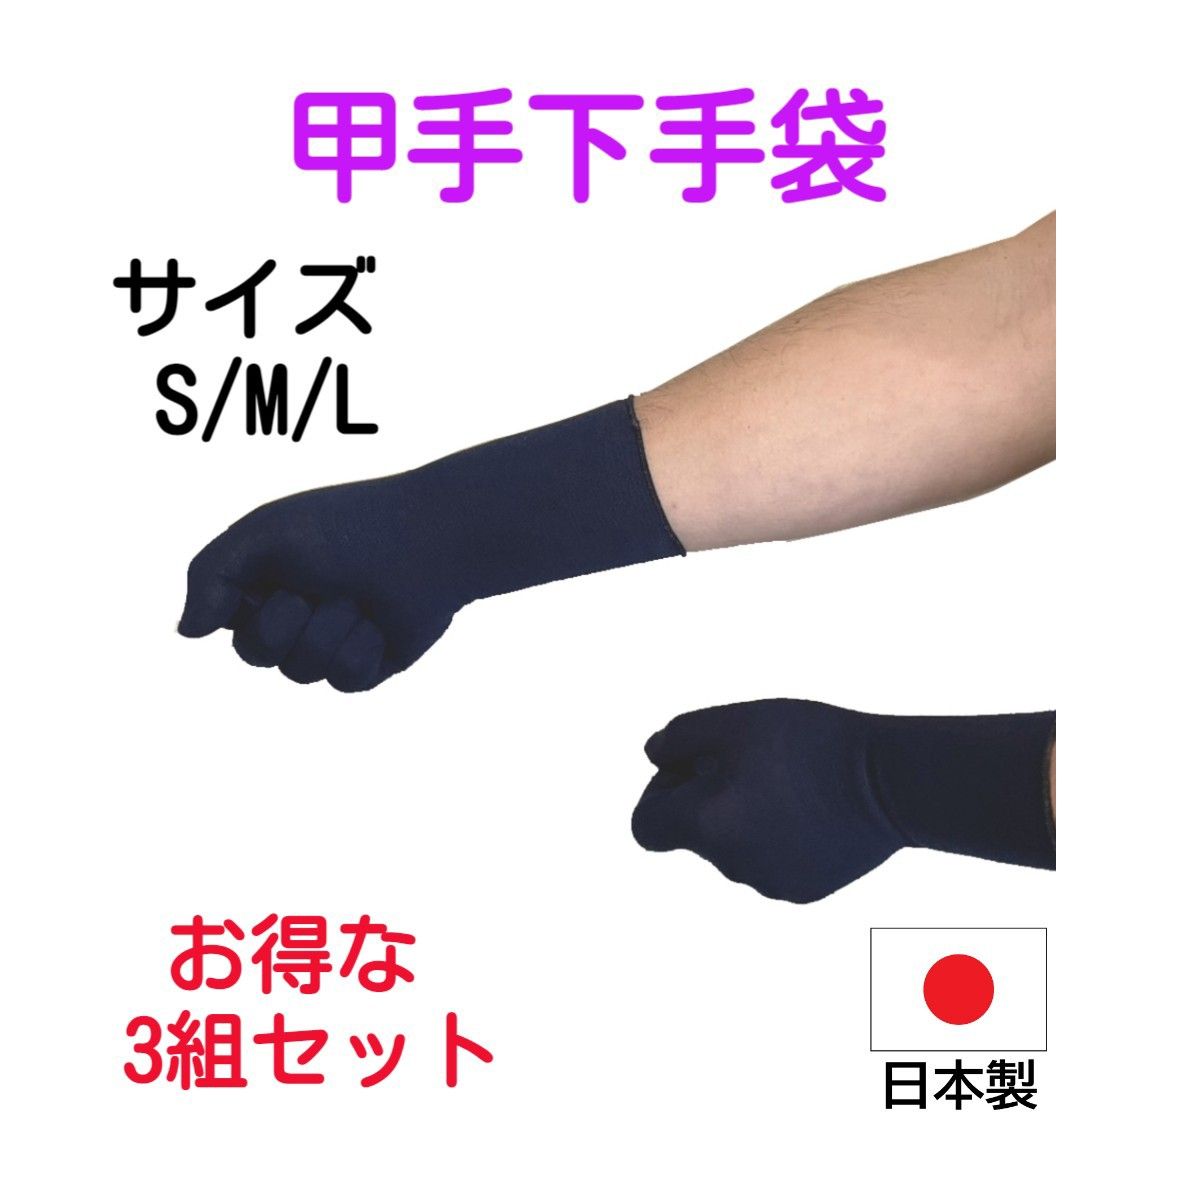 日本製　抗菌防臭加工済みの甲手下手袋  5本指  3組セット